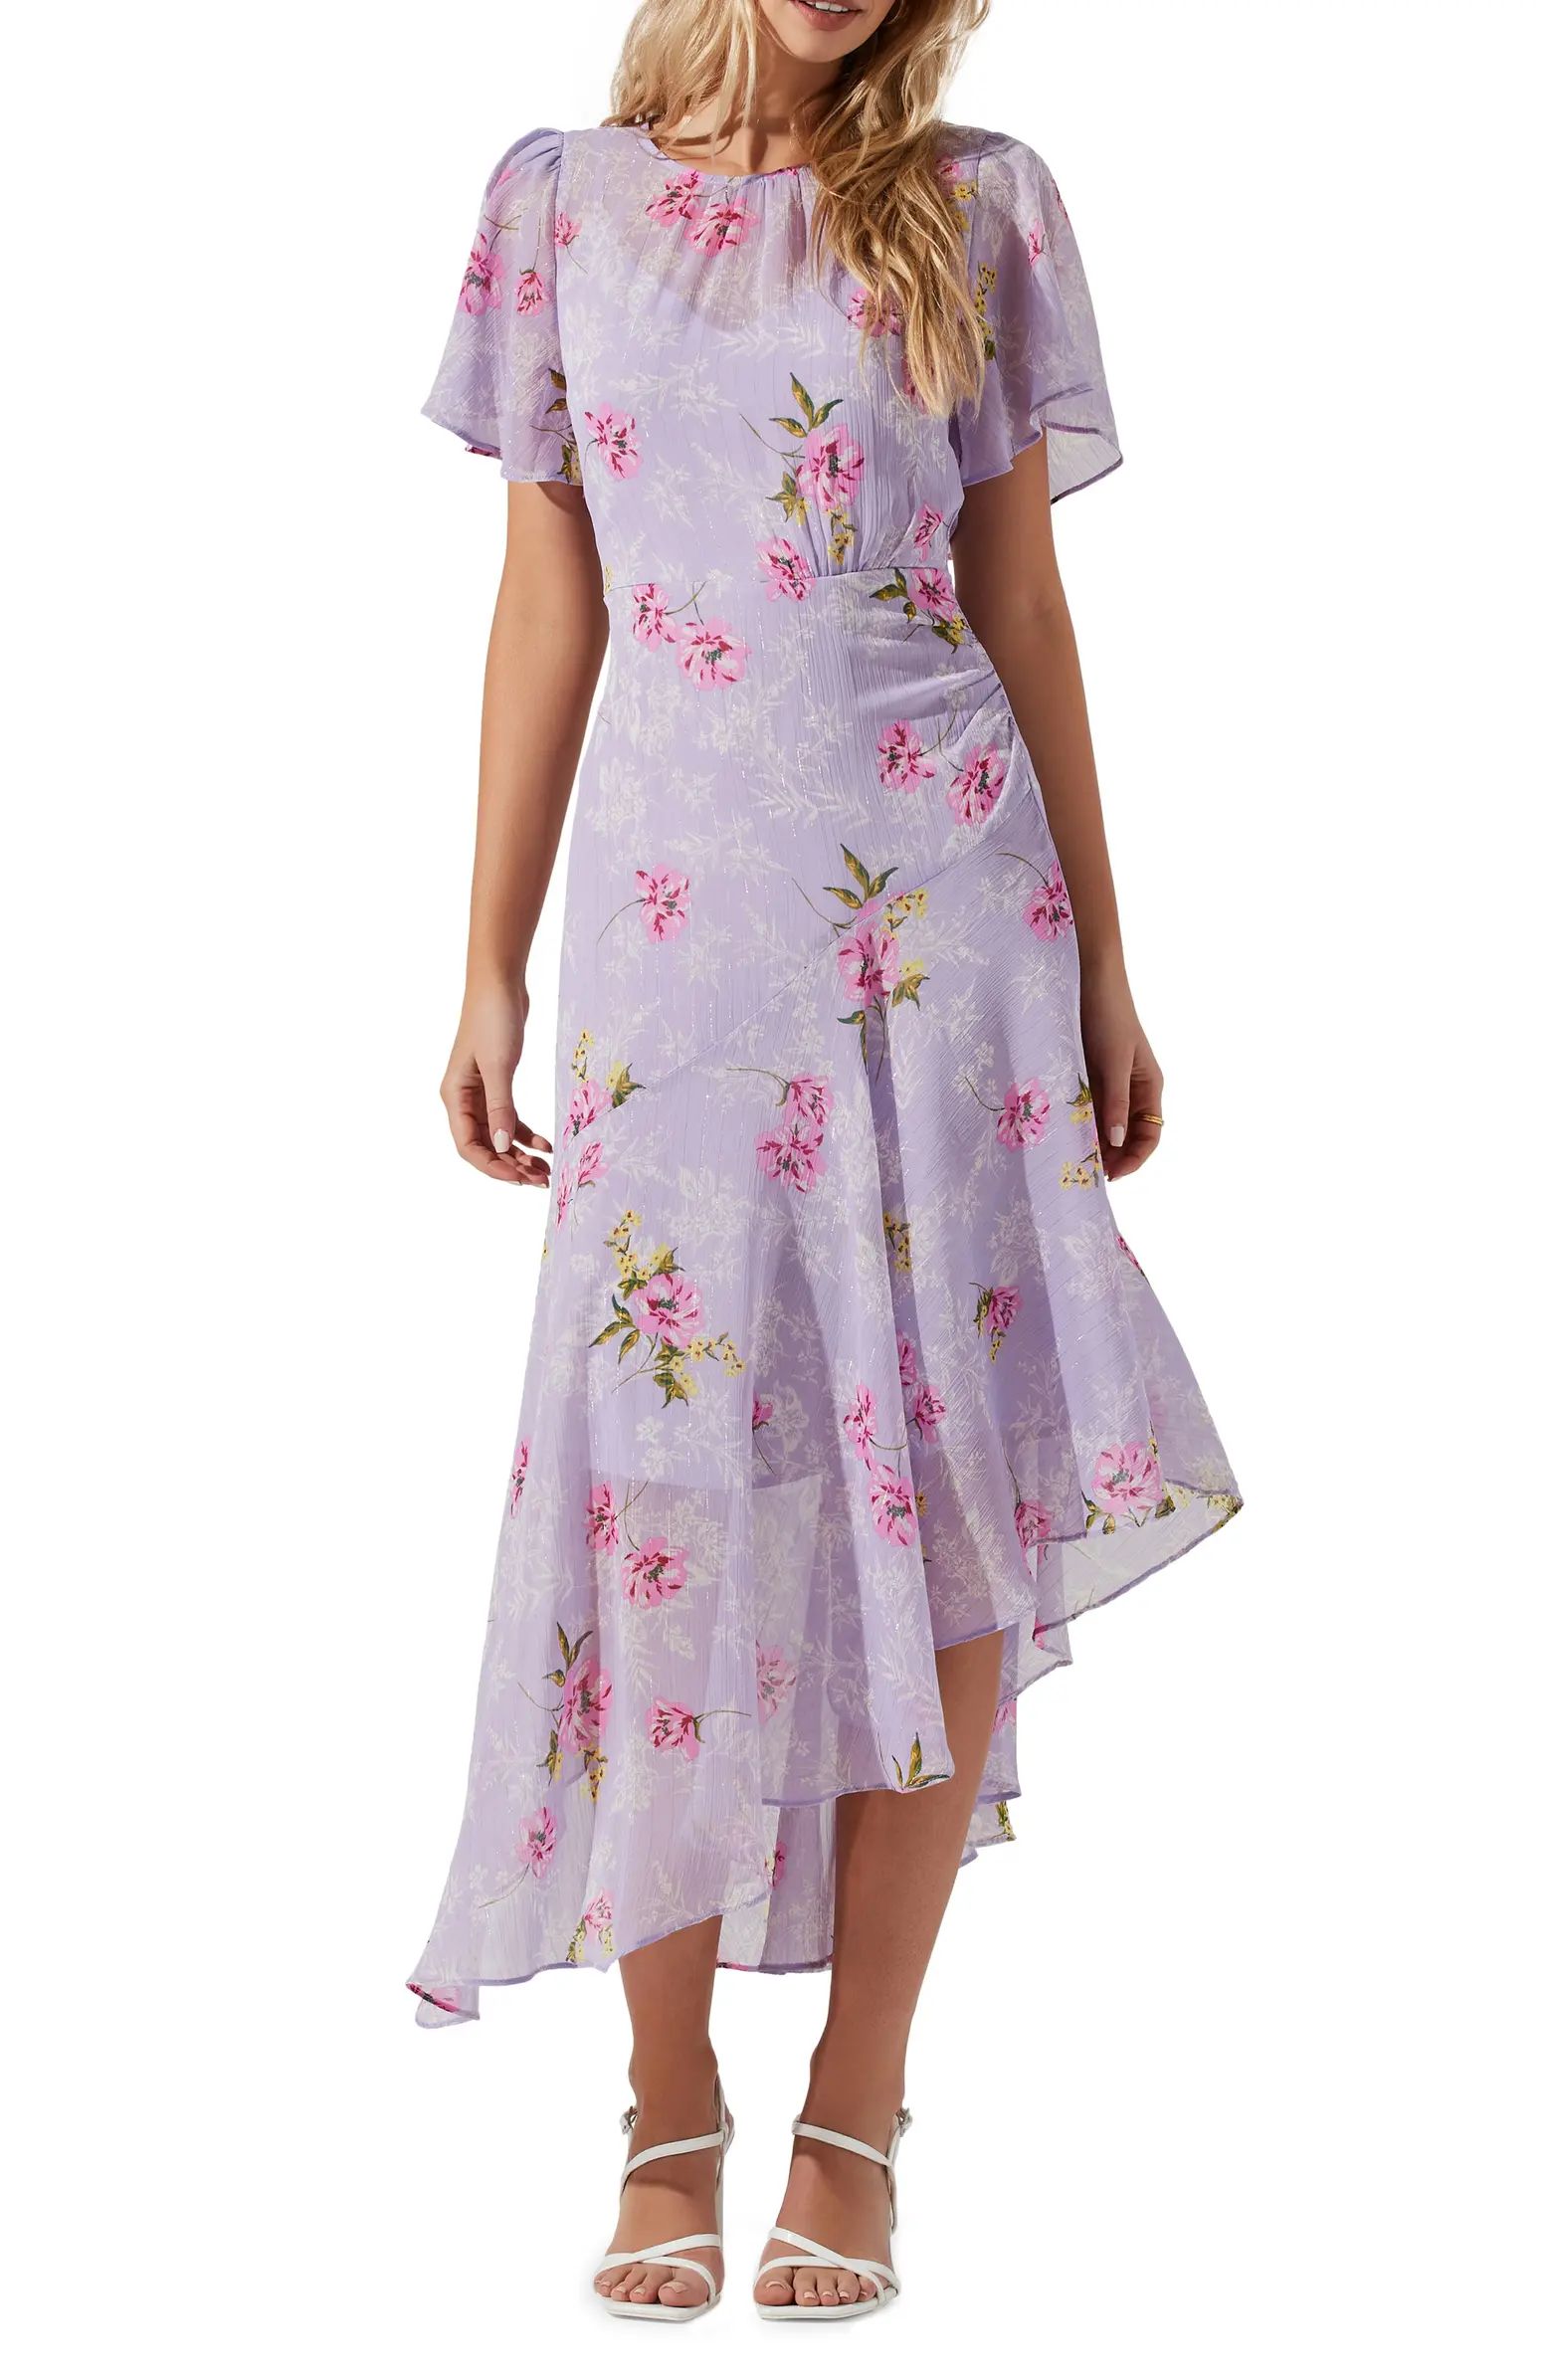 Floral Print Dress | Nordstrom Rack